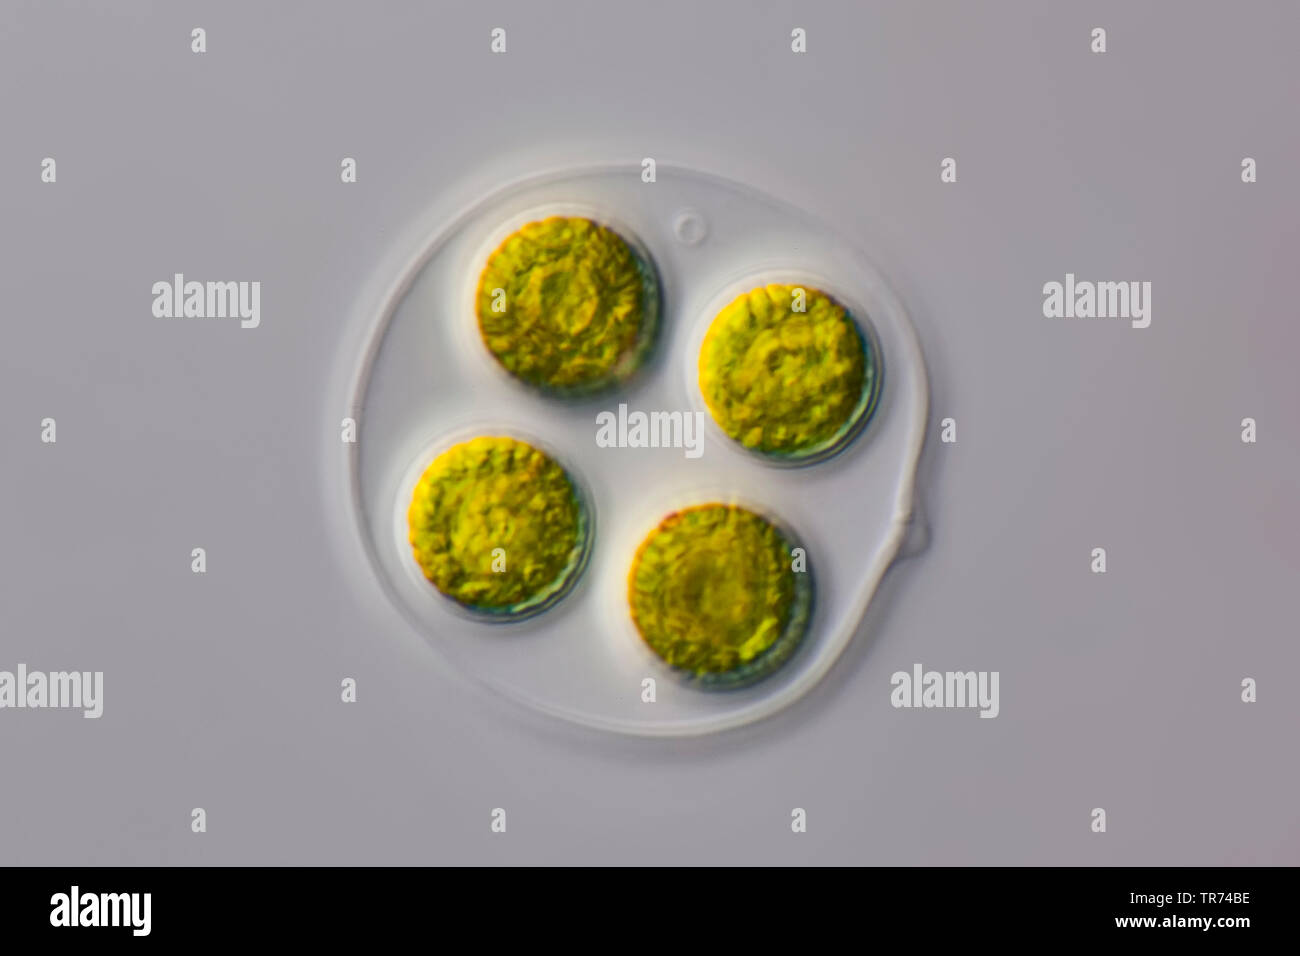 Gree Algen in einem transparenten gallertartige Umhüllung, Differential Interferenz Kontrast Mikroskopie, x100, Deutschland Stockfoto